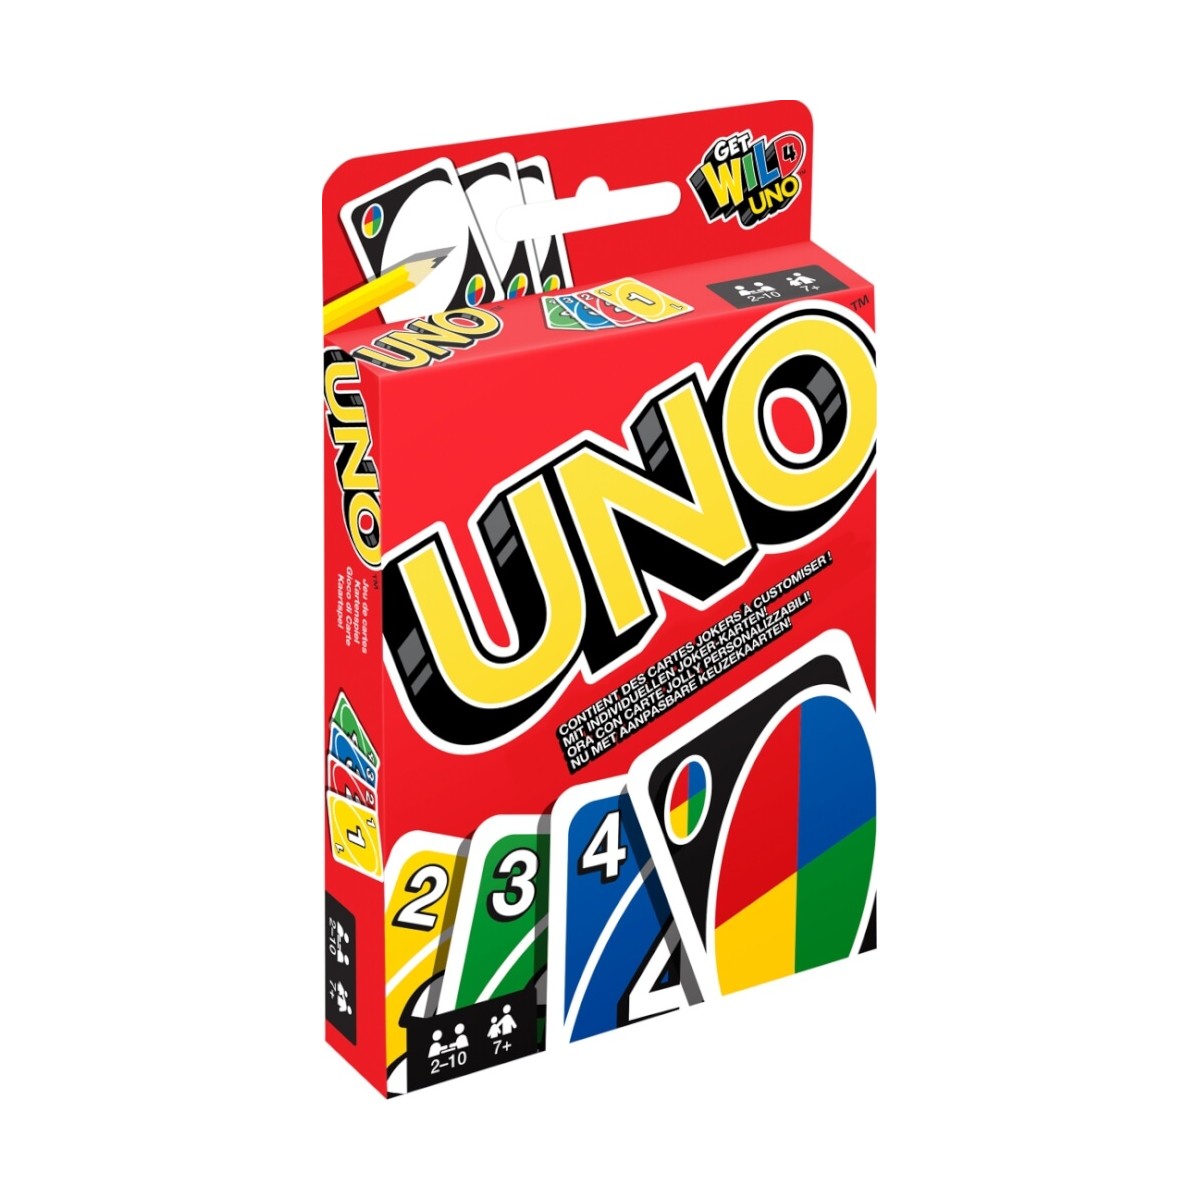 UNO Kartenspiel, geeignet für 2 - 10 Spieler von Mattel, 8,90 €